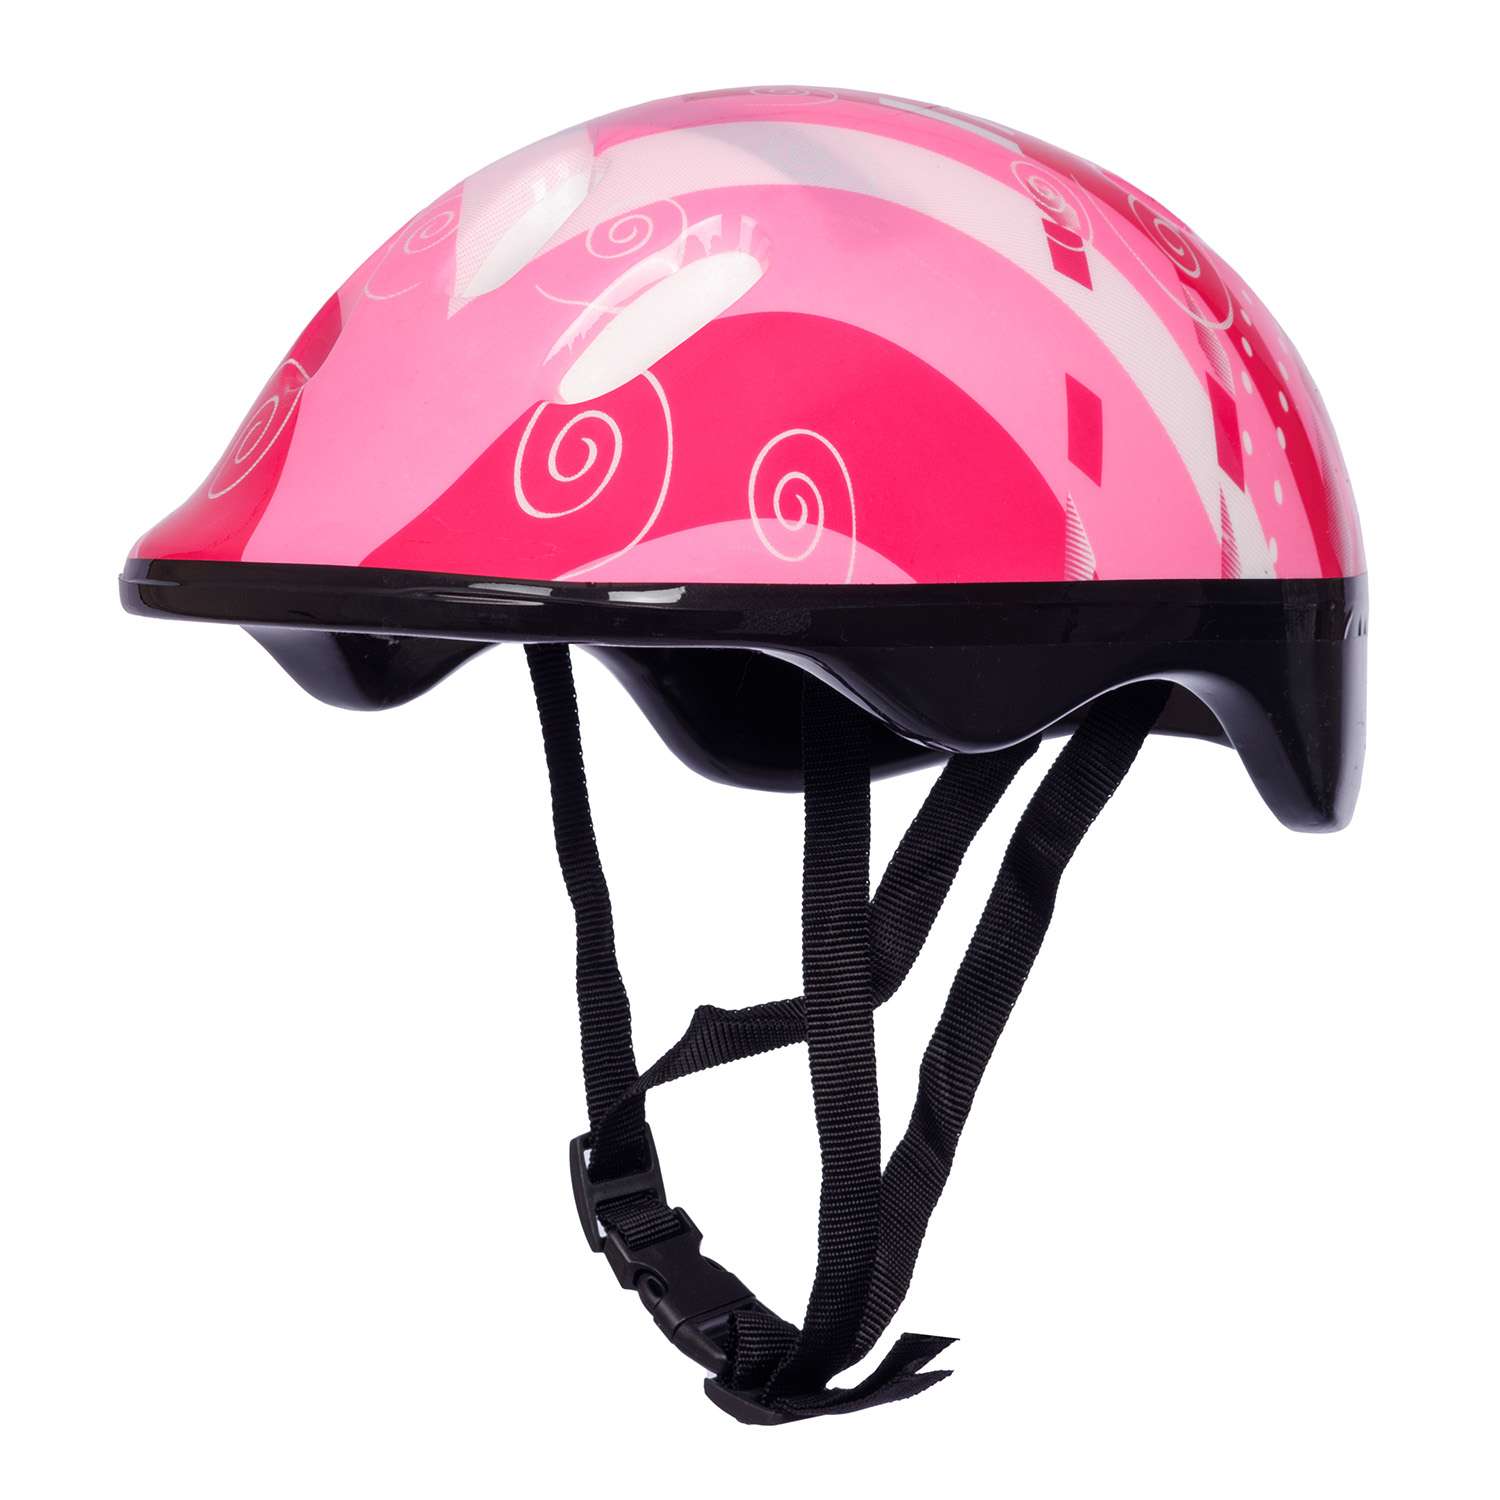 Роликовые коньки BABY STYLE раздвижный 27-30 S шлем и защита светящиеся колеса розовый - фото 7